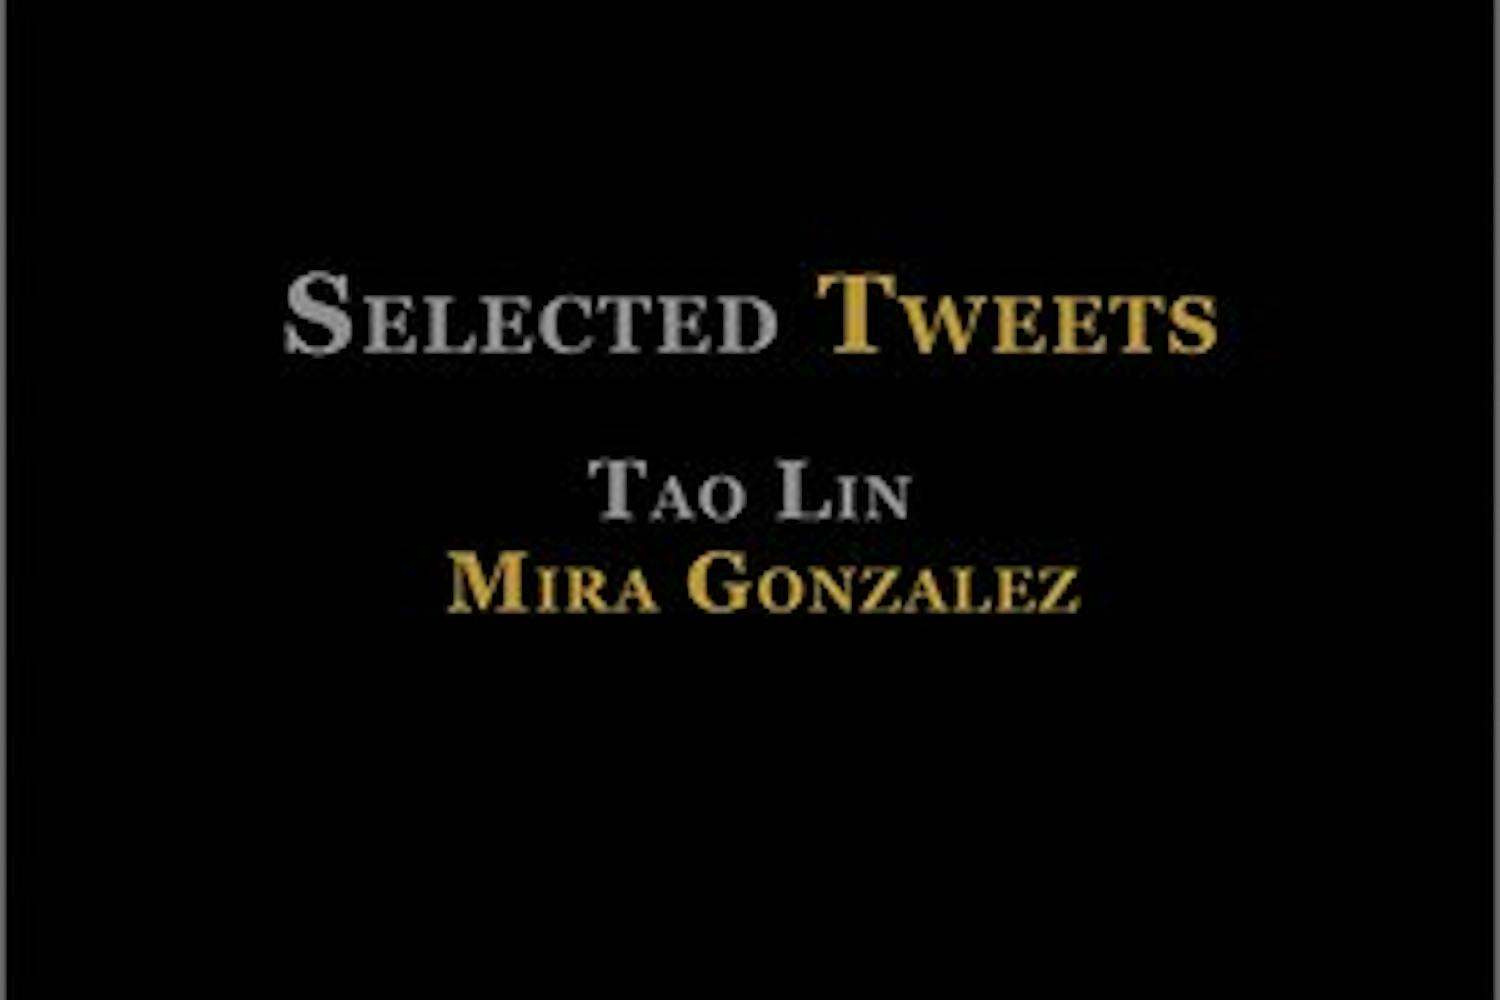 Selected tweets